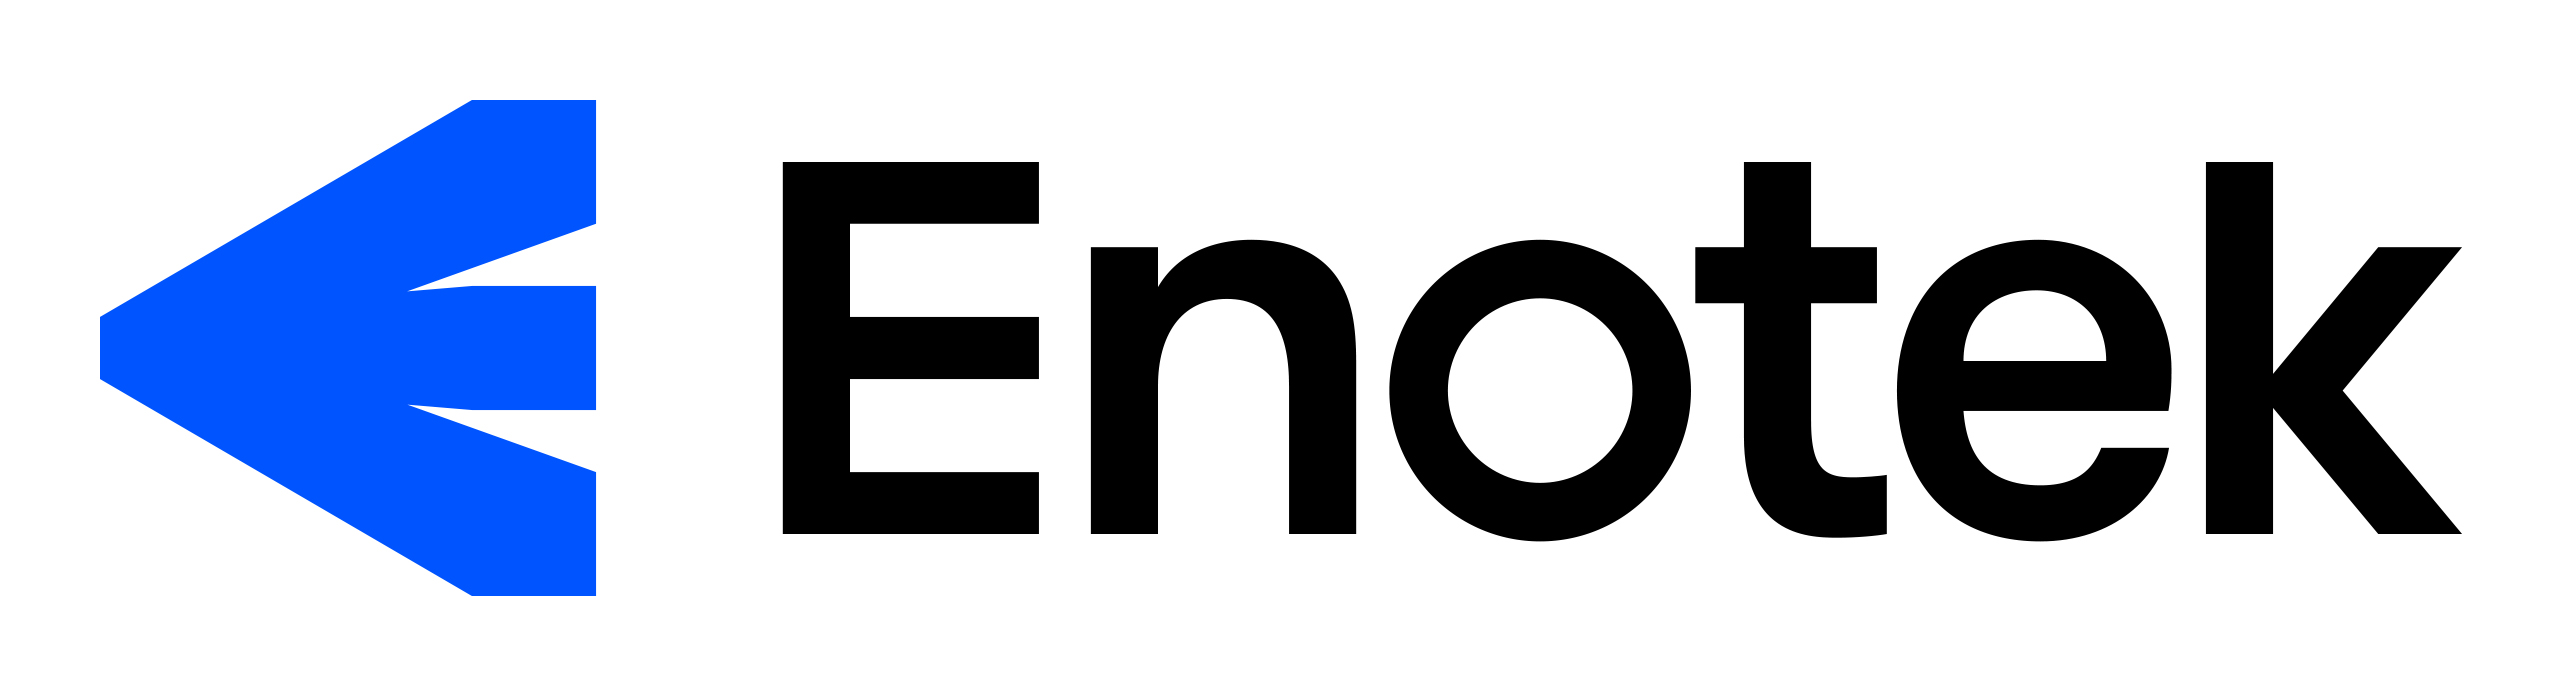 Enotek-logo-RGB.jpg